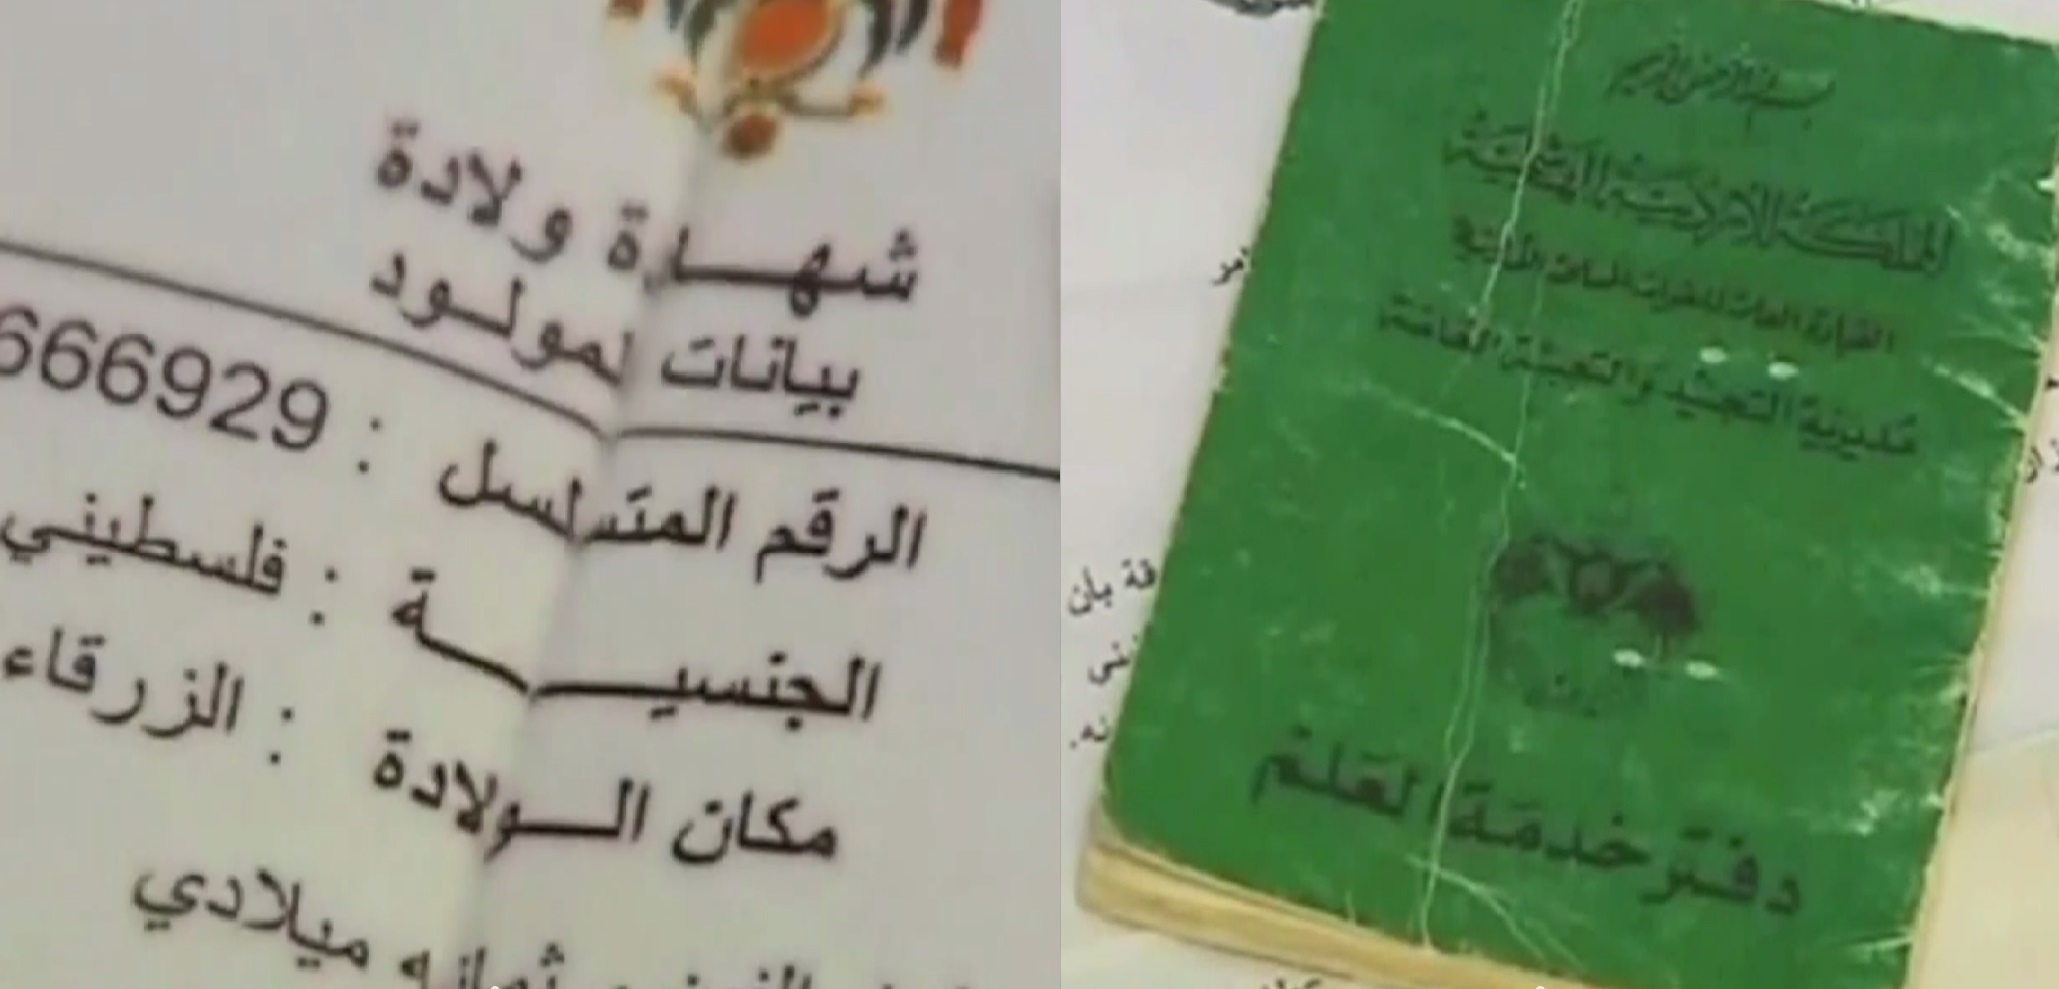 תעודת זהות ירדנית-פלסטינית של בוגר שירות חובה בצבא ירדן (צילום מסך: יוטיוב)